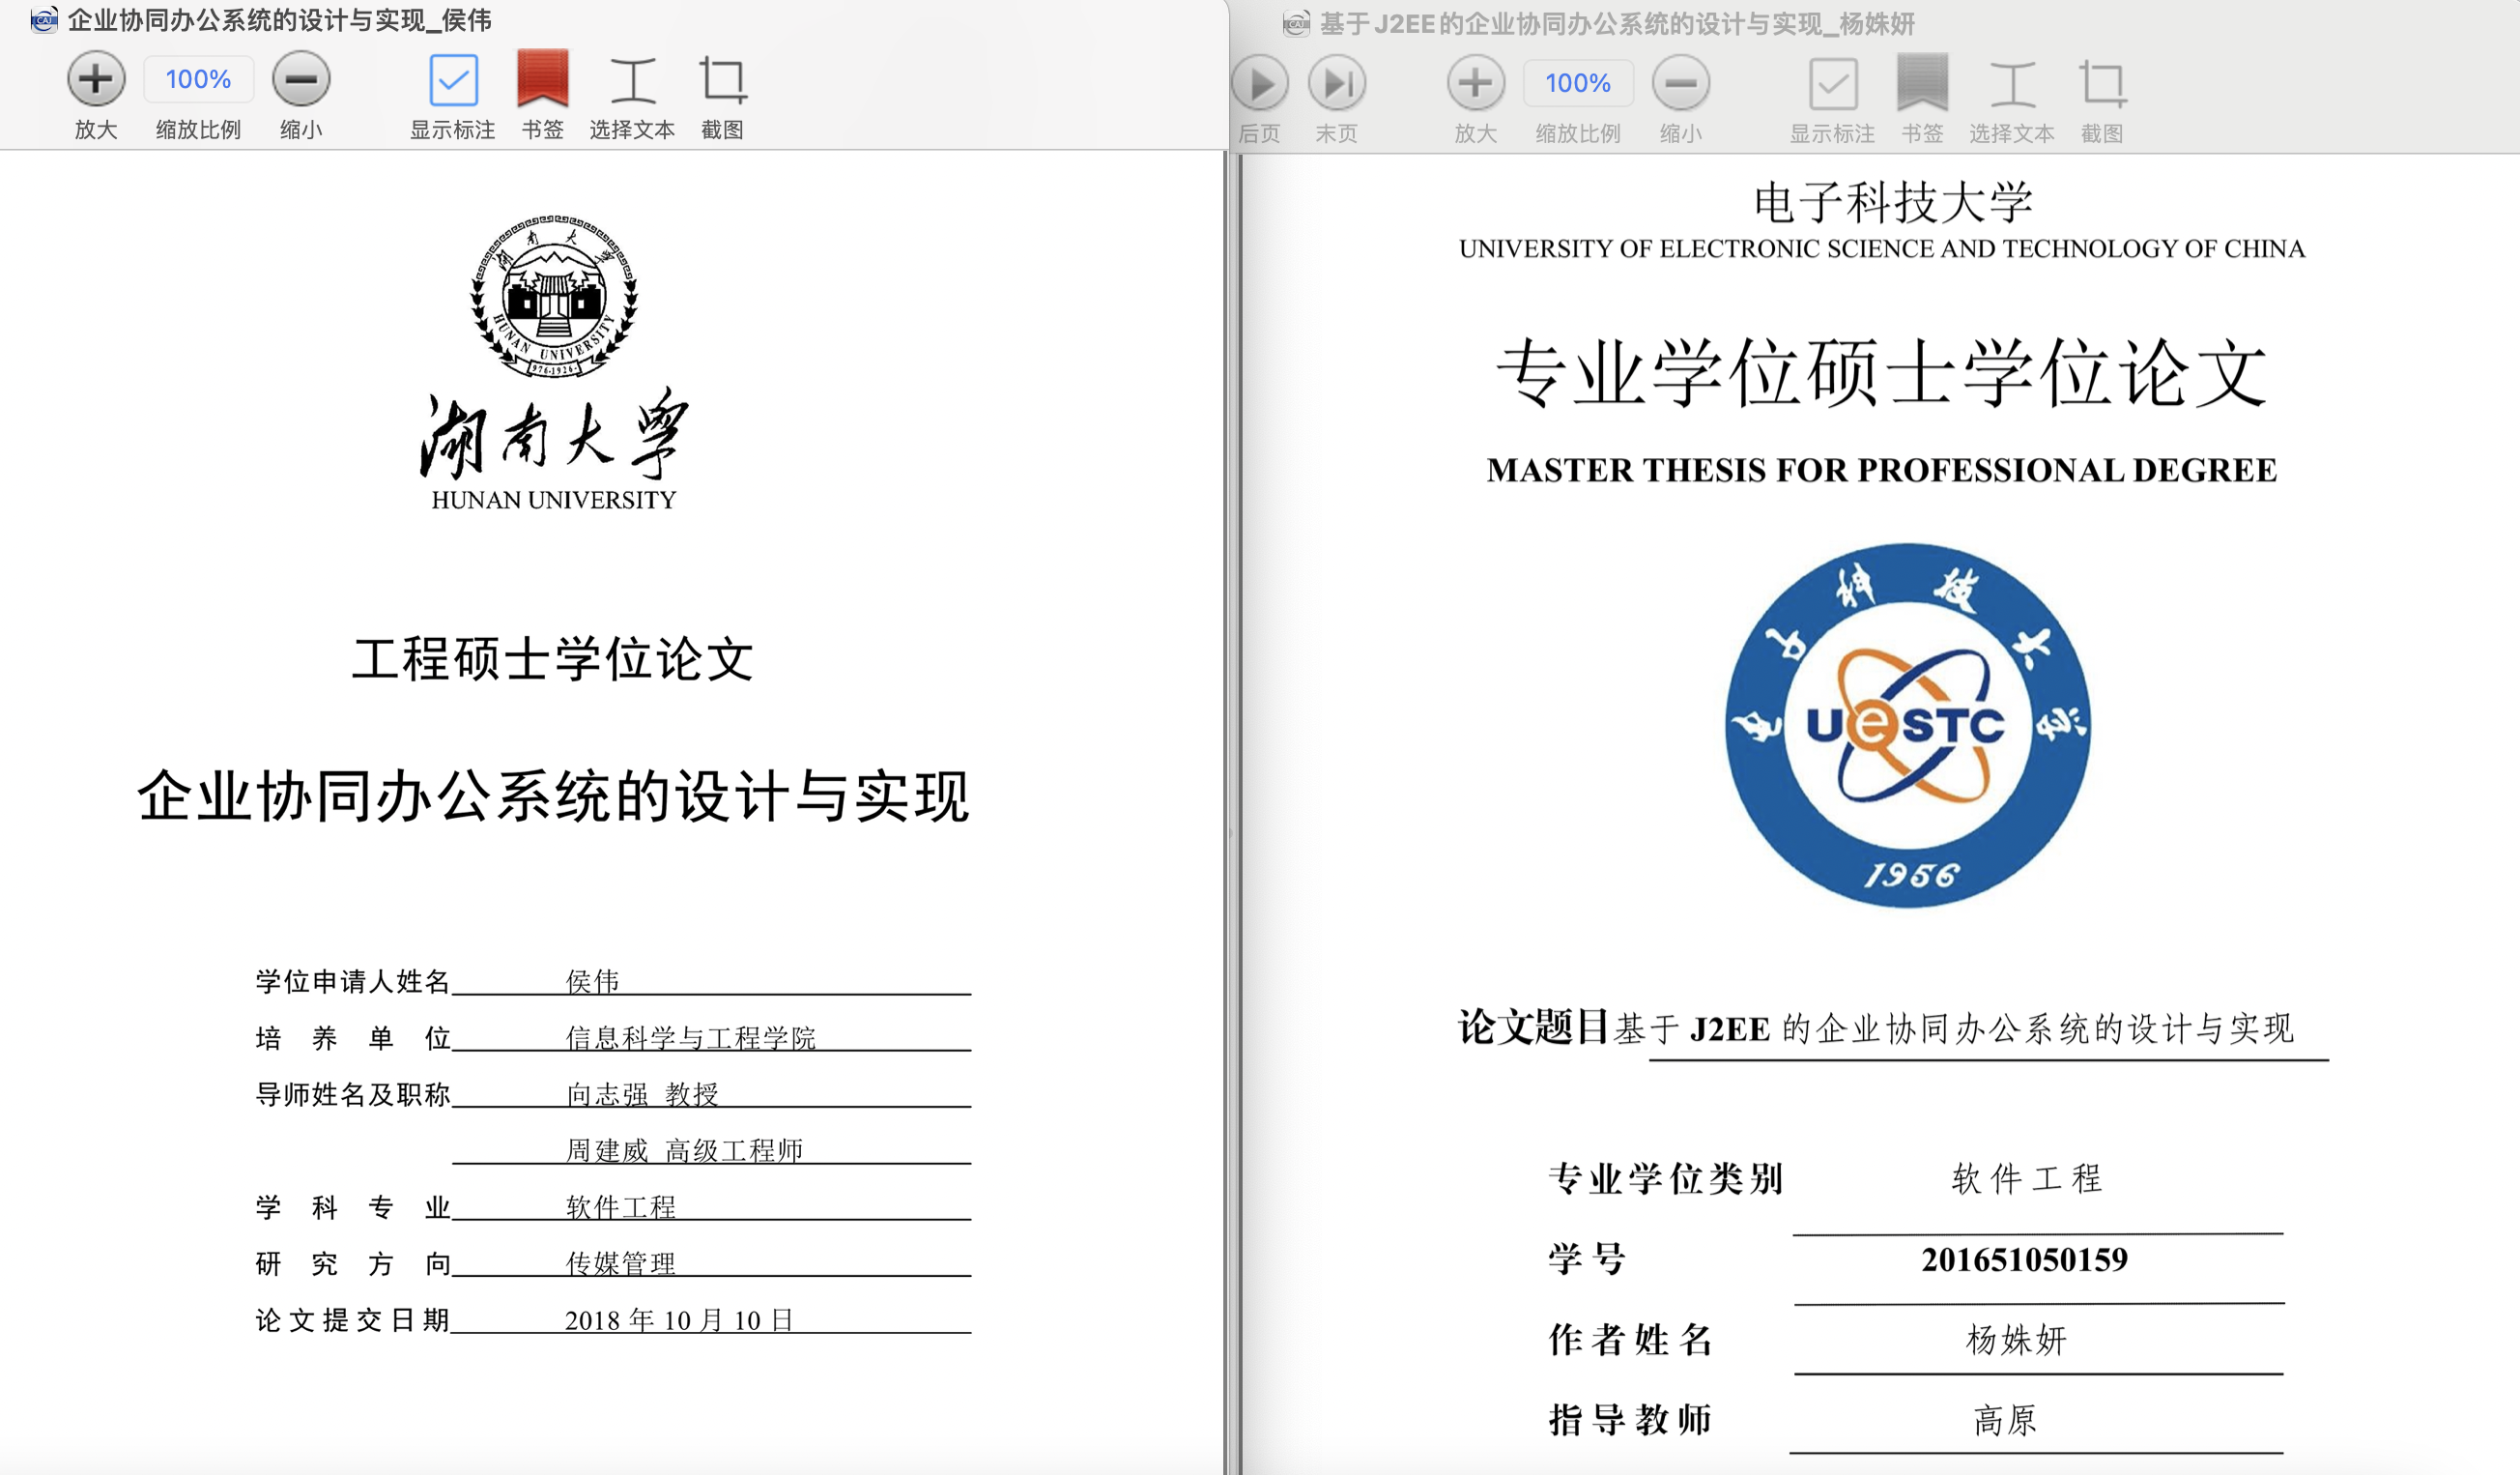 湖南大学侯伟的硕士学位论文封面(左),电子科技大学杨姝妍的硕士学位